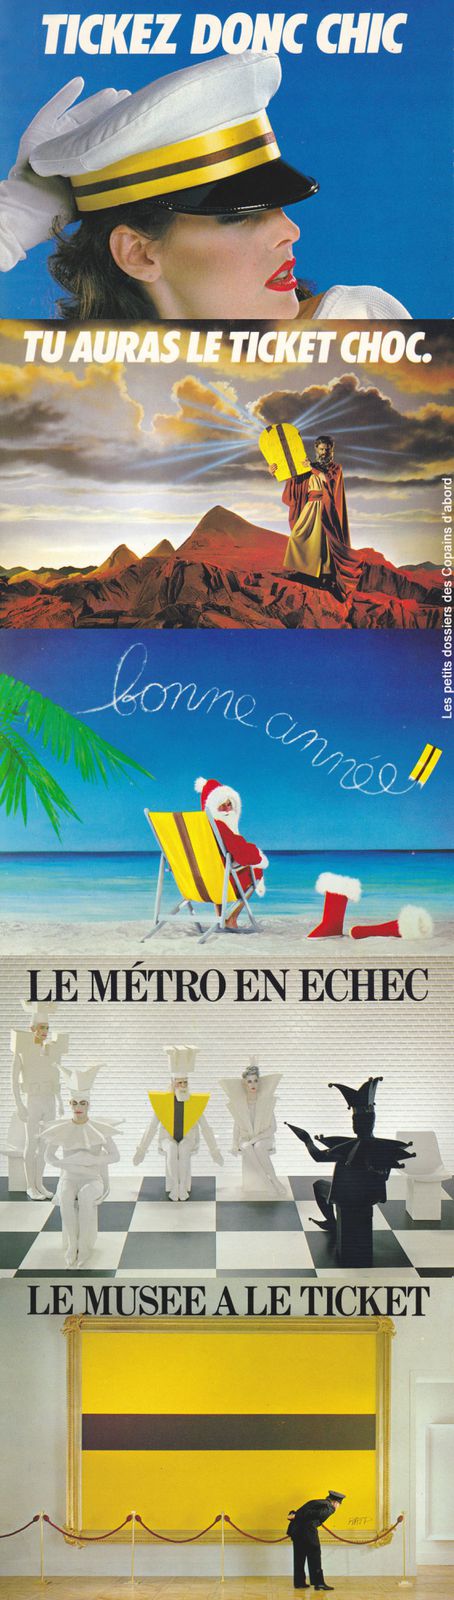 Montage RATP Ticket chic ticket choc campagne 1981